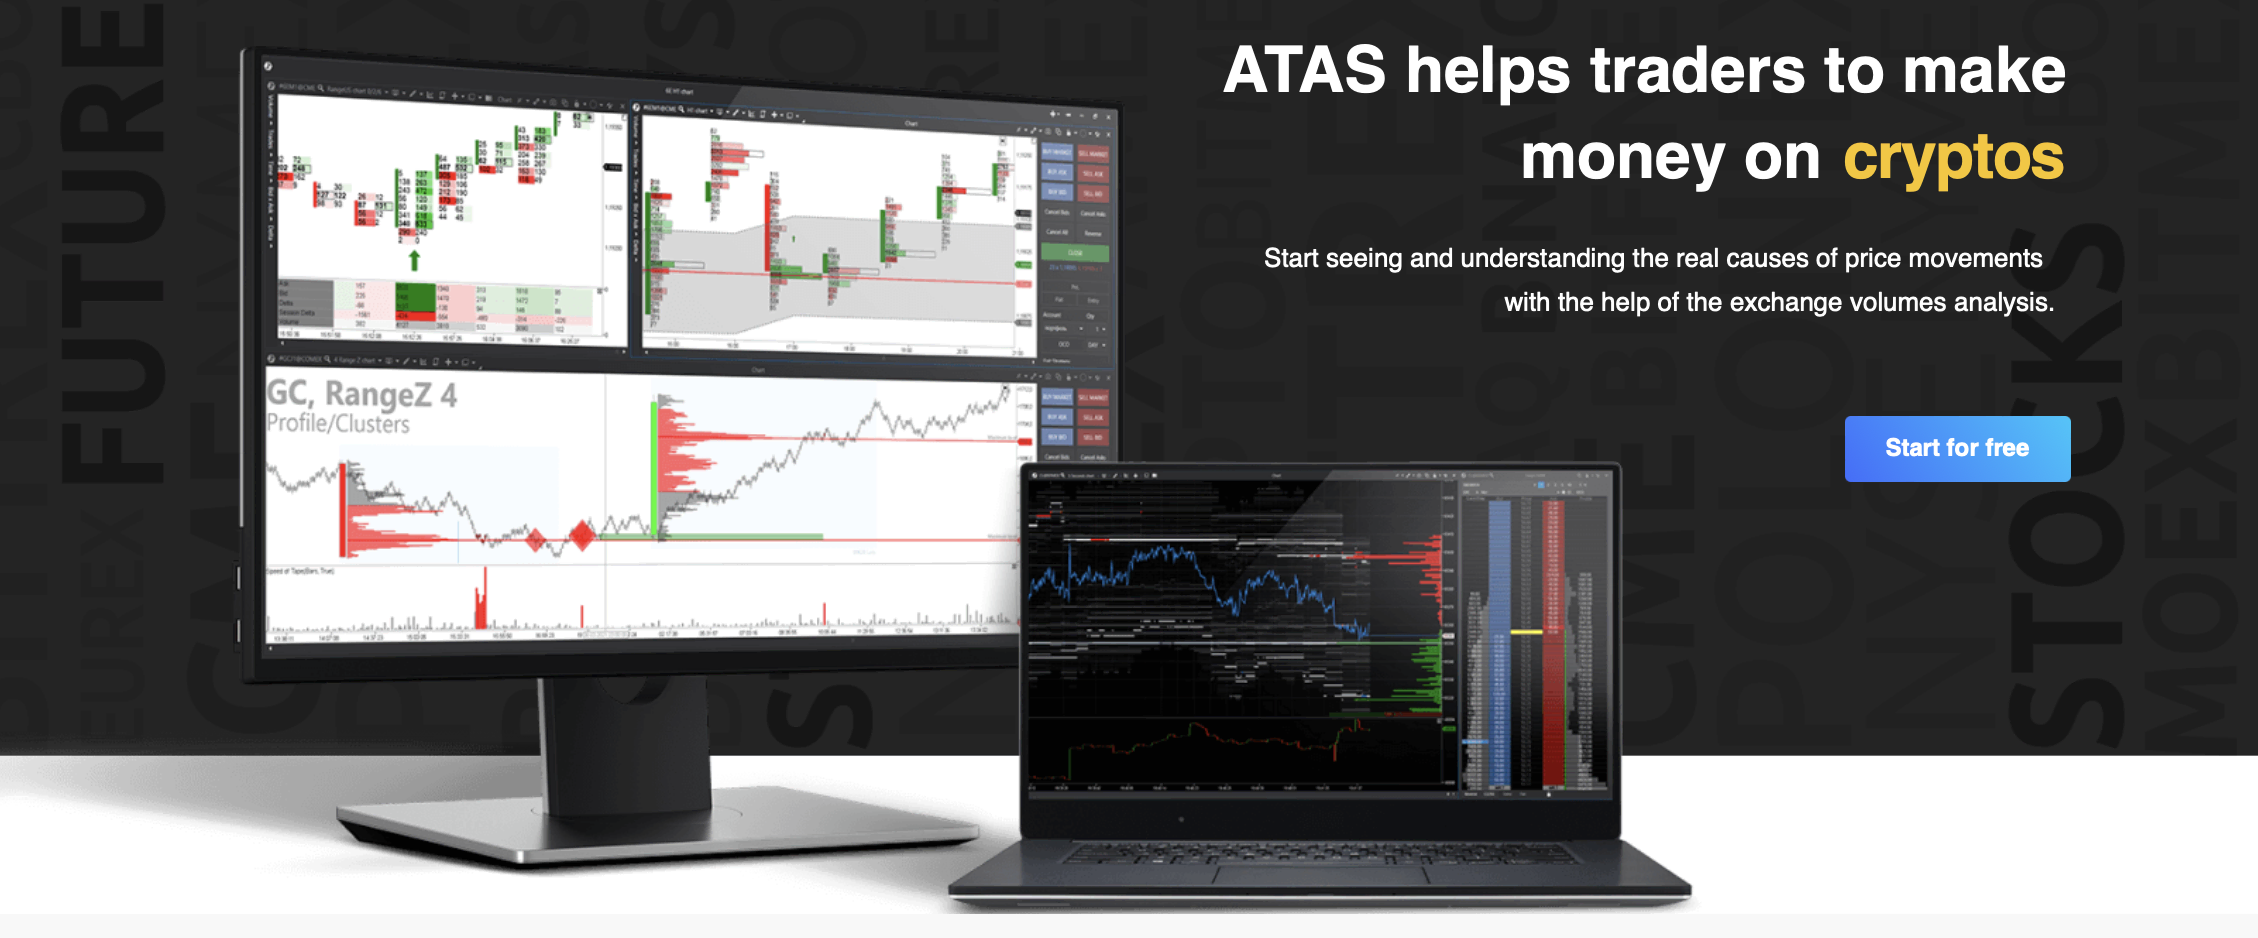 De officiële website van het ATAS-handelsplatform